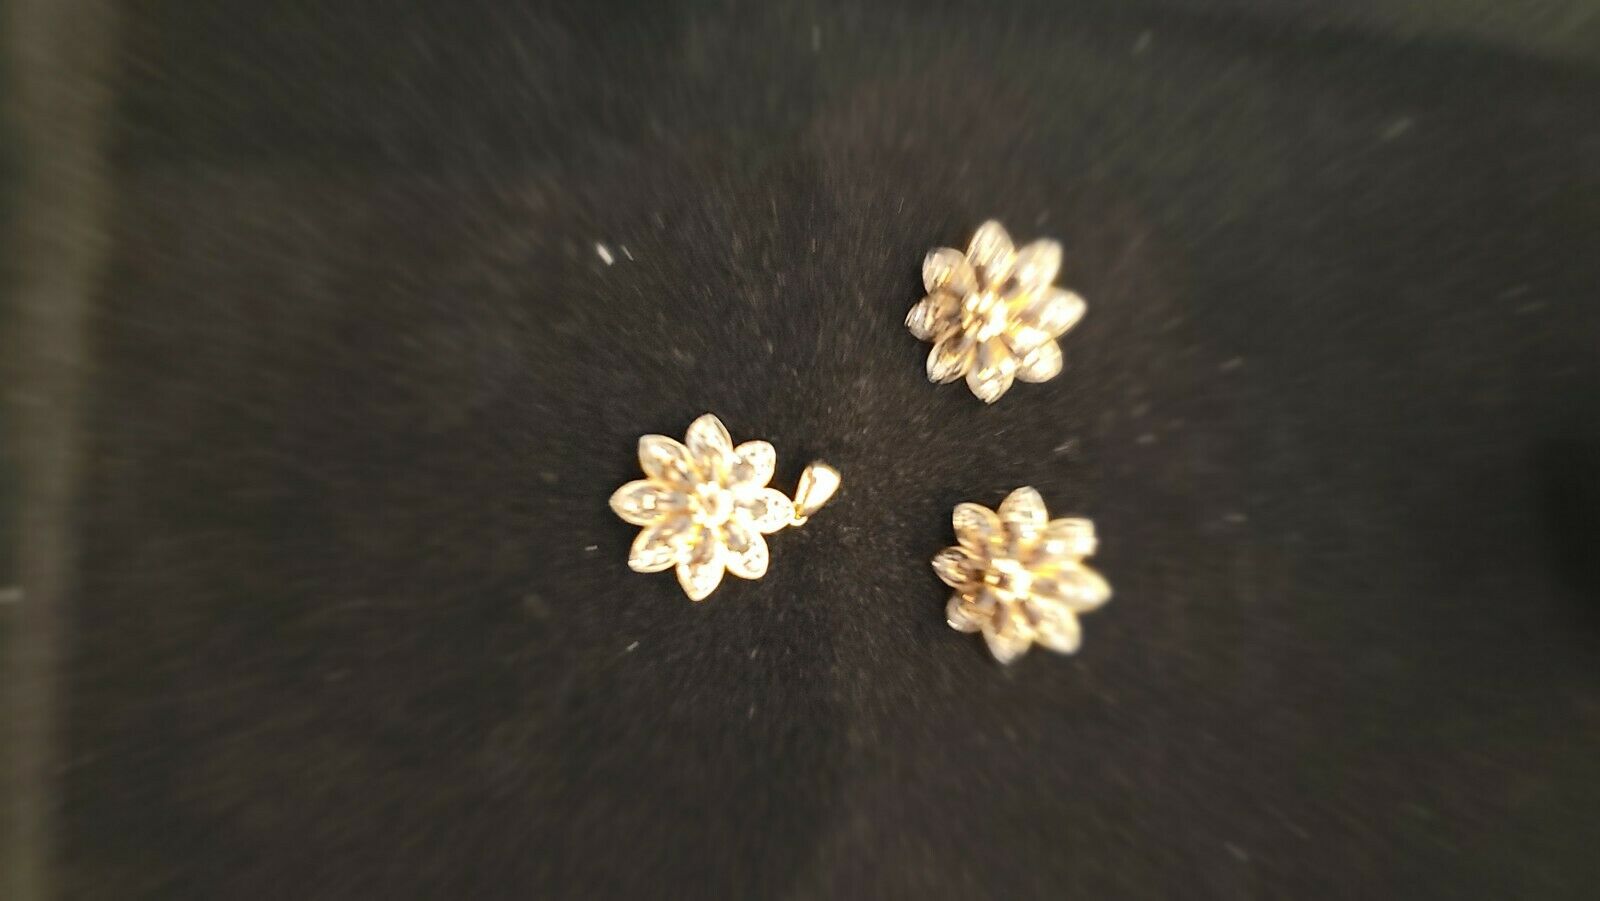 14kt Yellow Gold Vintage Briolette Cut Smoky Quartz Necklace & Earrings Set